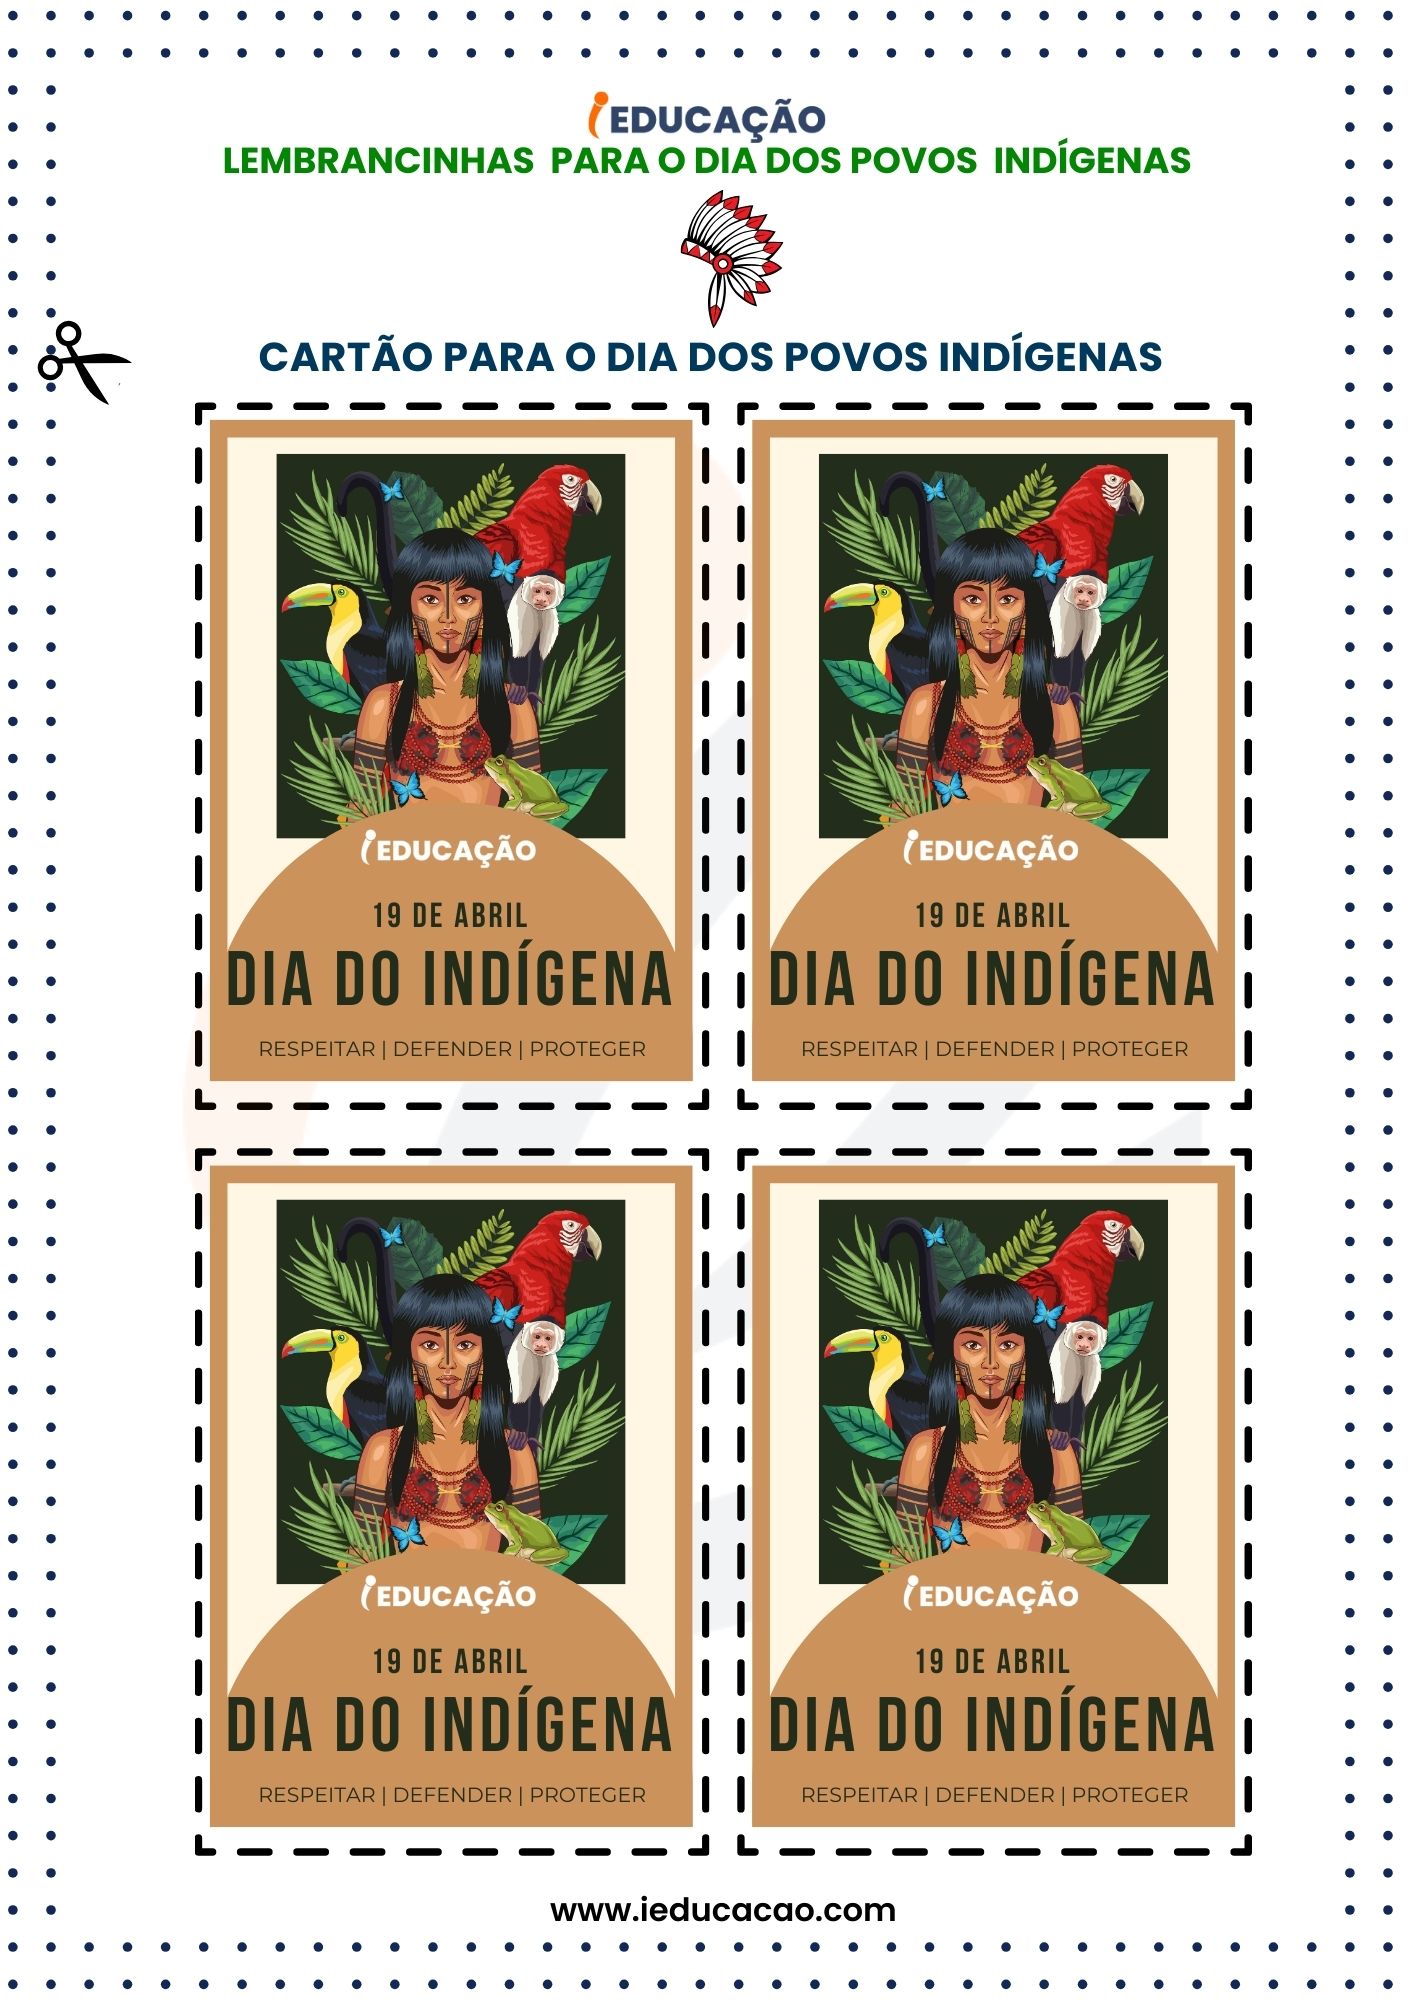 Lembrancinhas para o Dia do Índio - cartões do dia dos povos indígenas.jpg